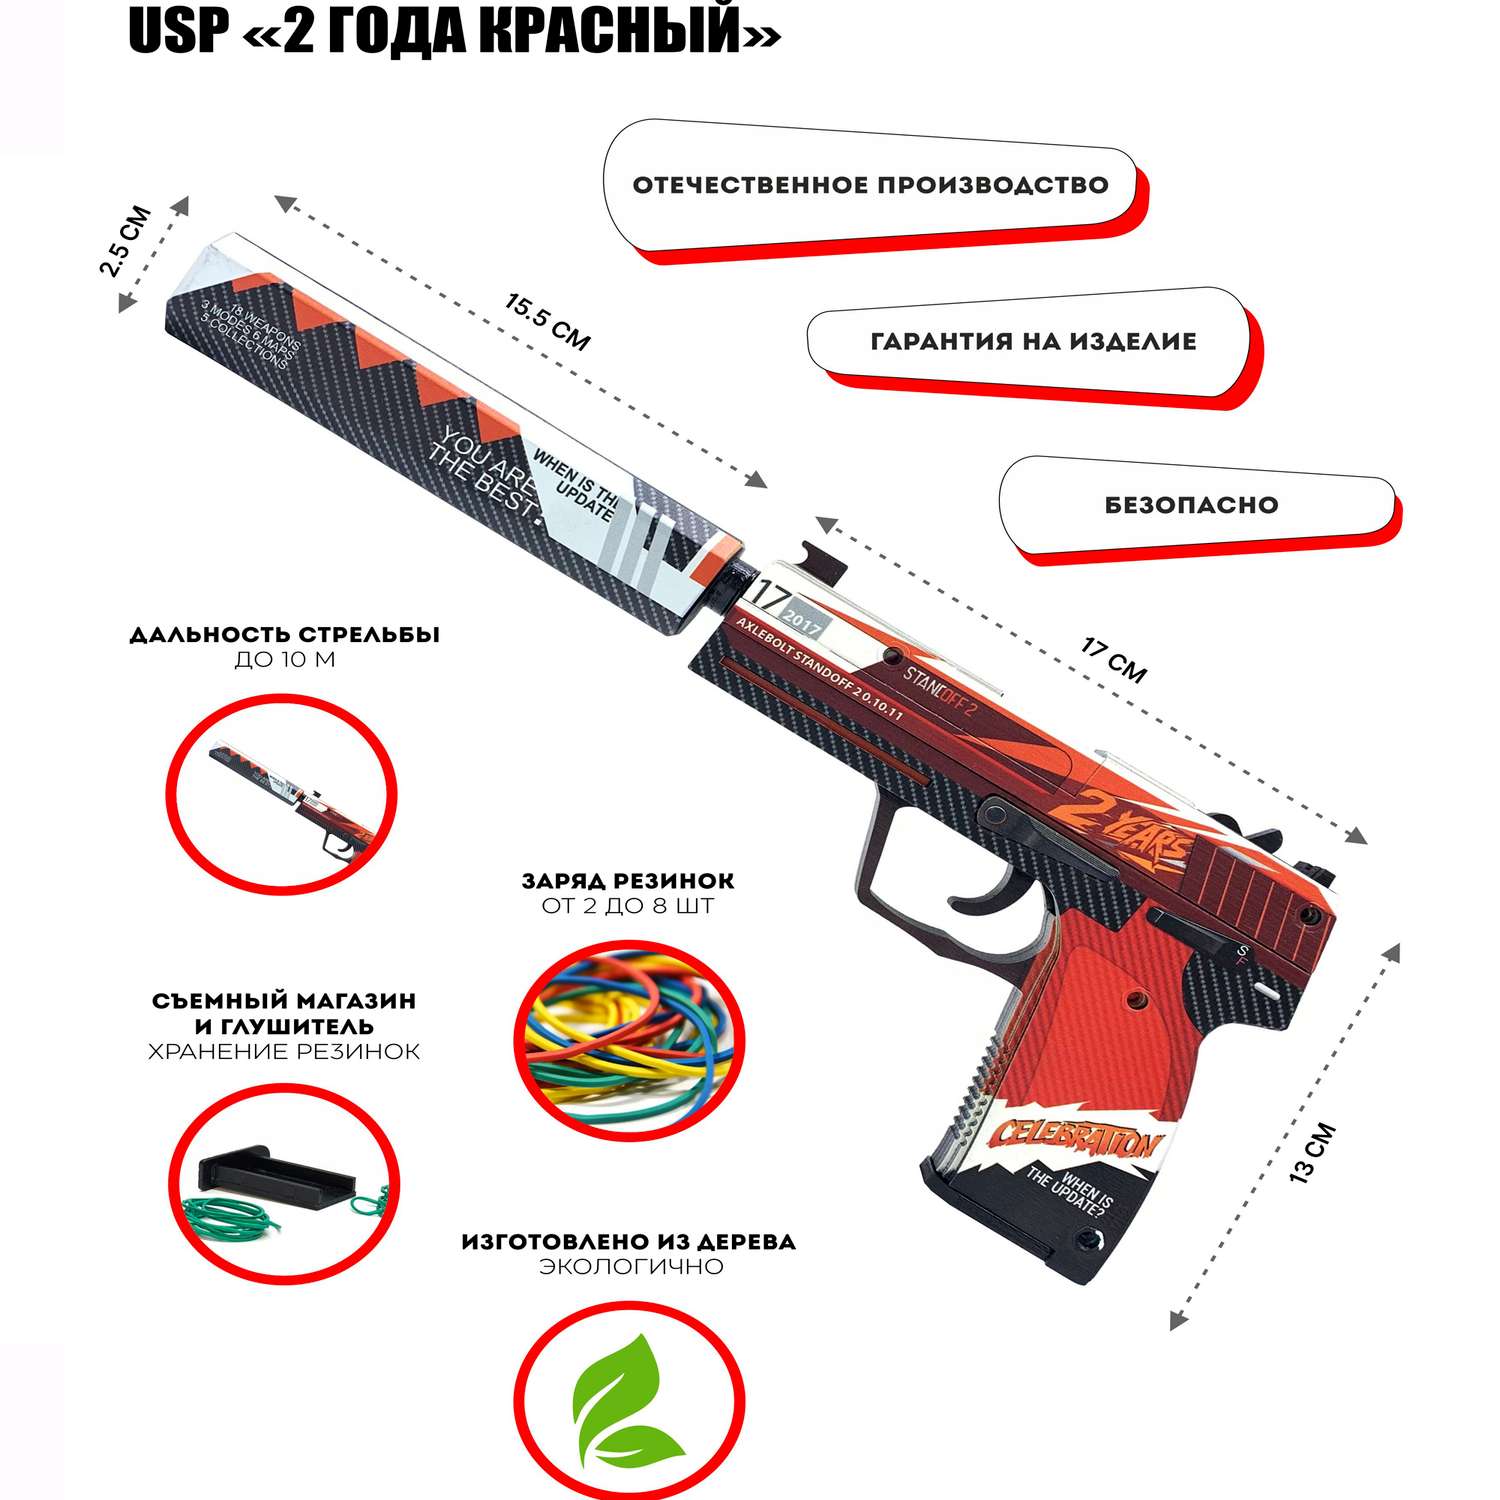 Деревянный пистолет USP-S PalisWood резинкострел 2 года красный - фото 2